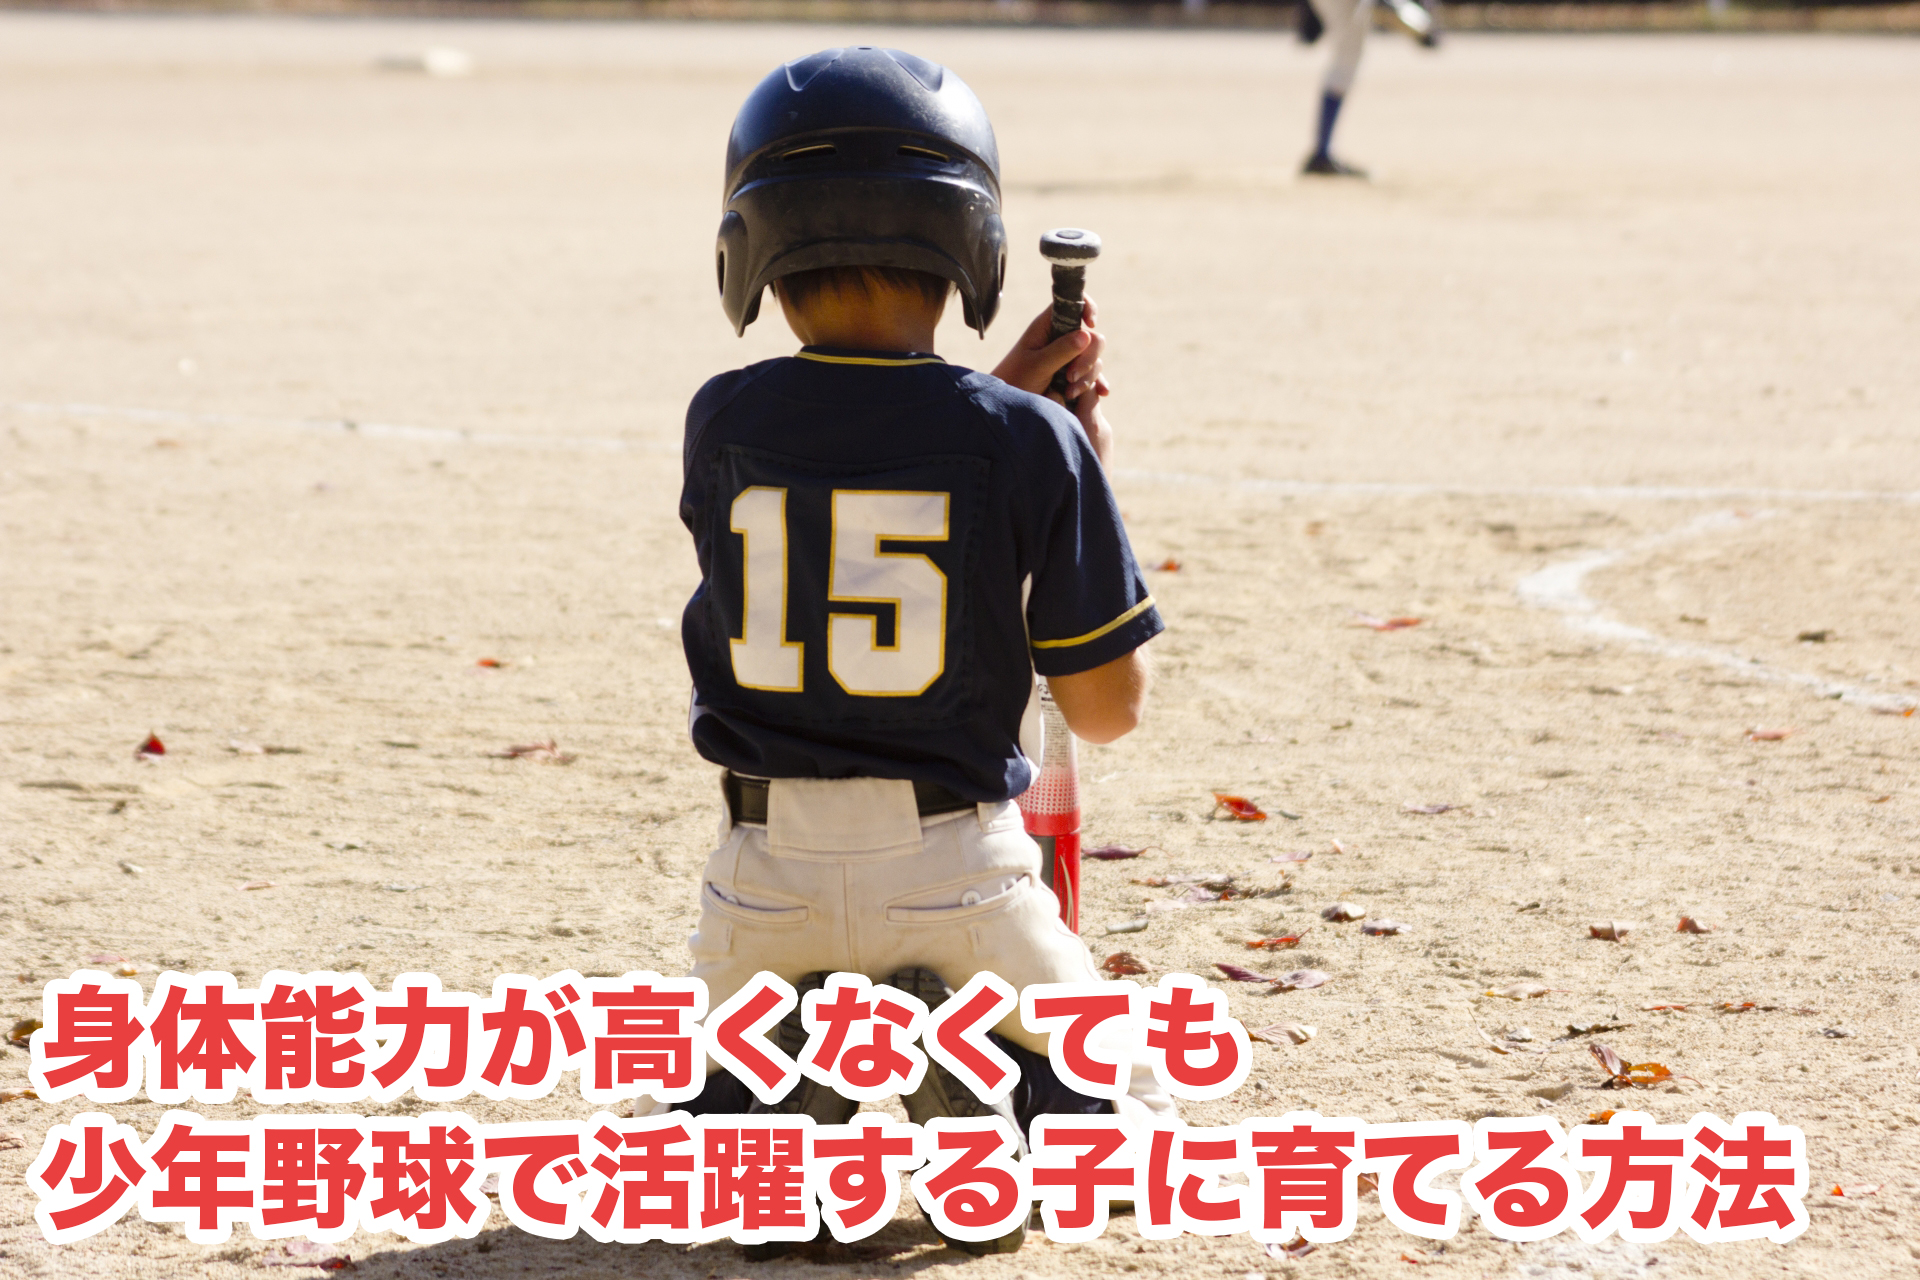 【センス無しでも】身体能力が高くなくても少年野球で活躍する子に育てる方法